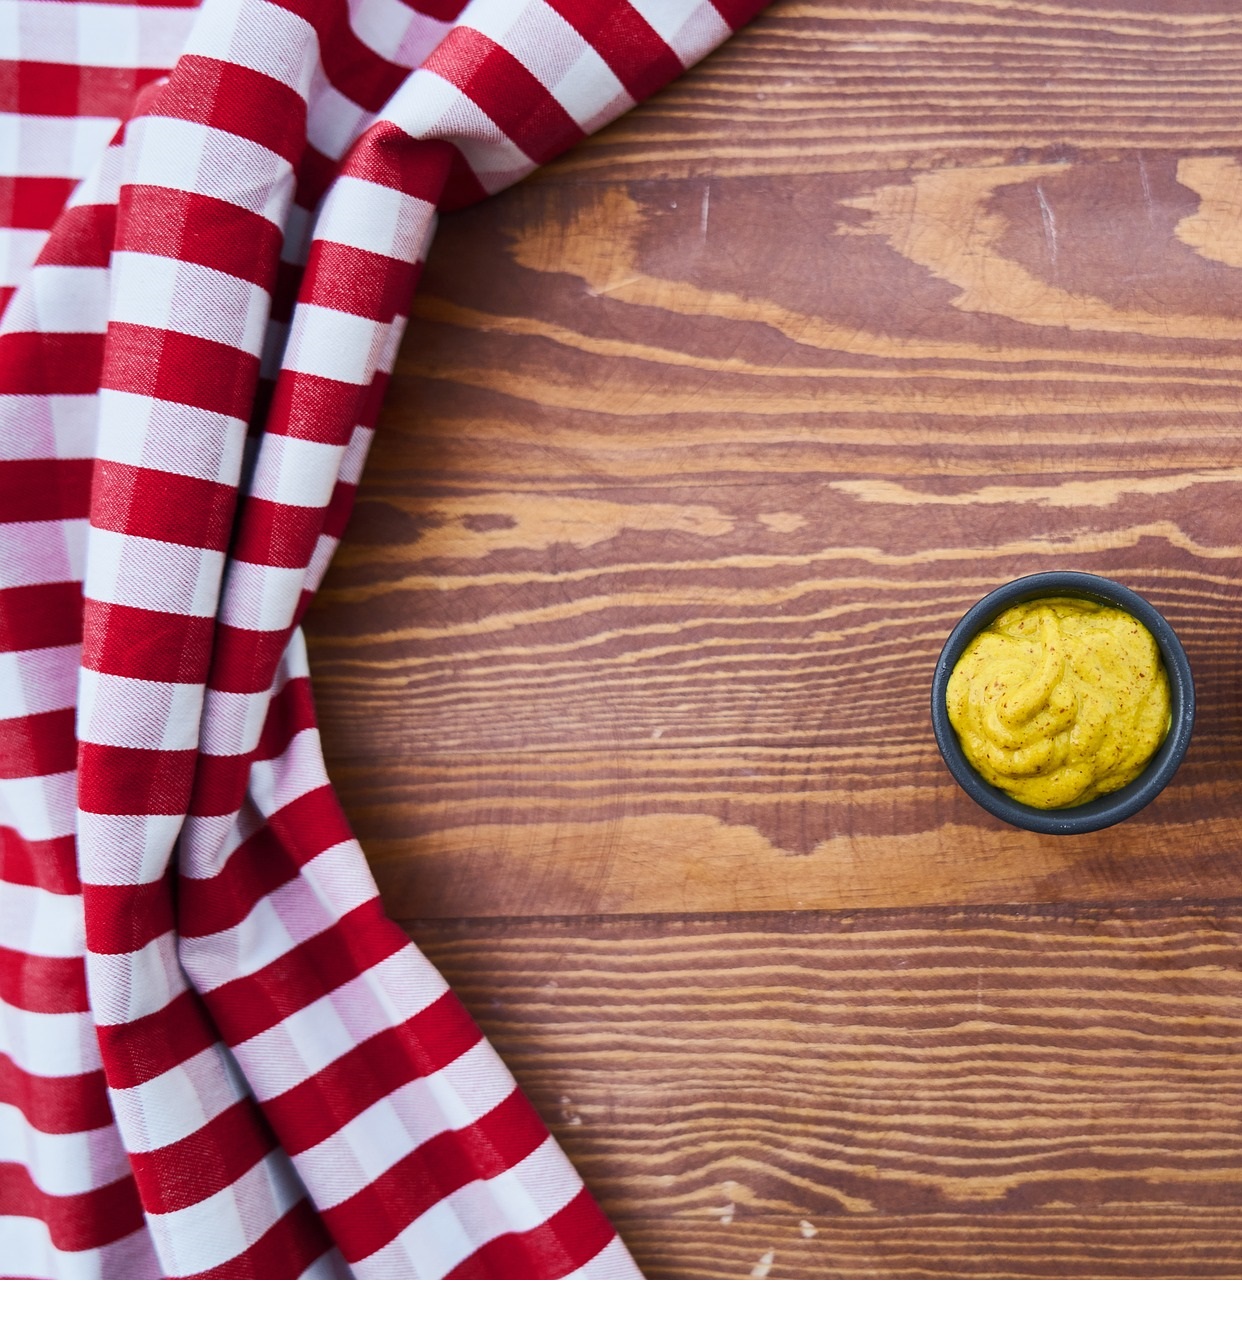 La moutarde, un remède naturel pour soulager vos douleurs